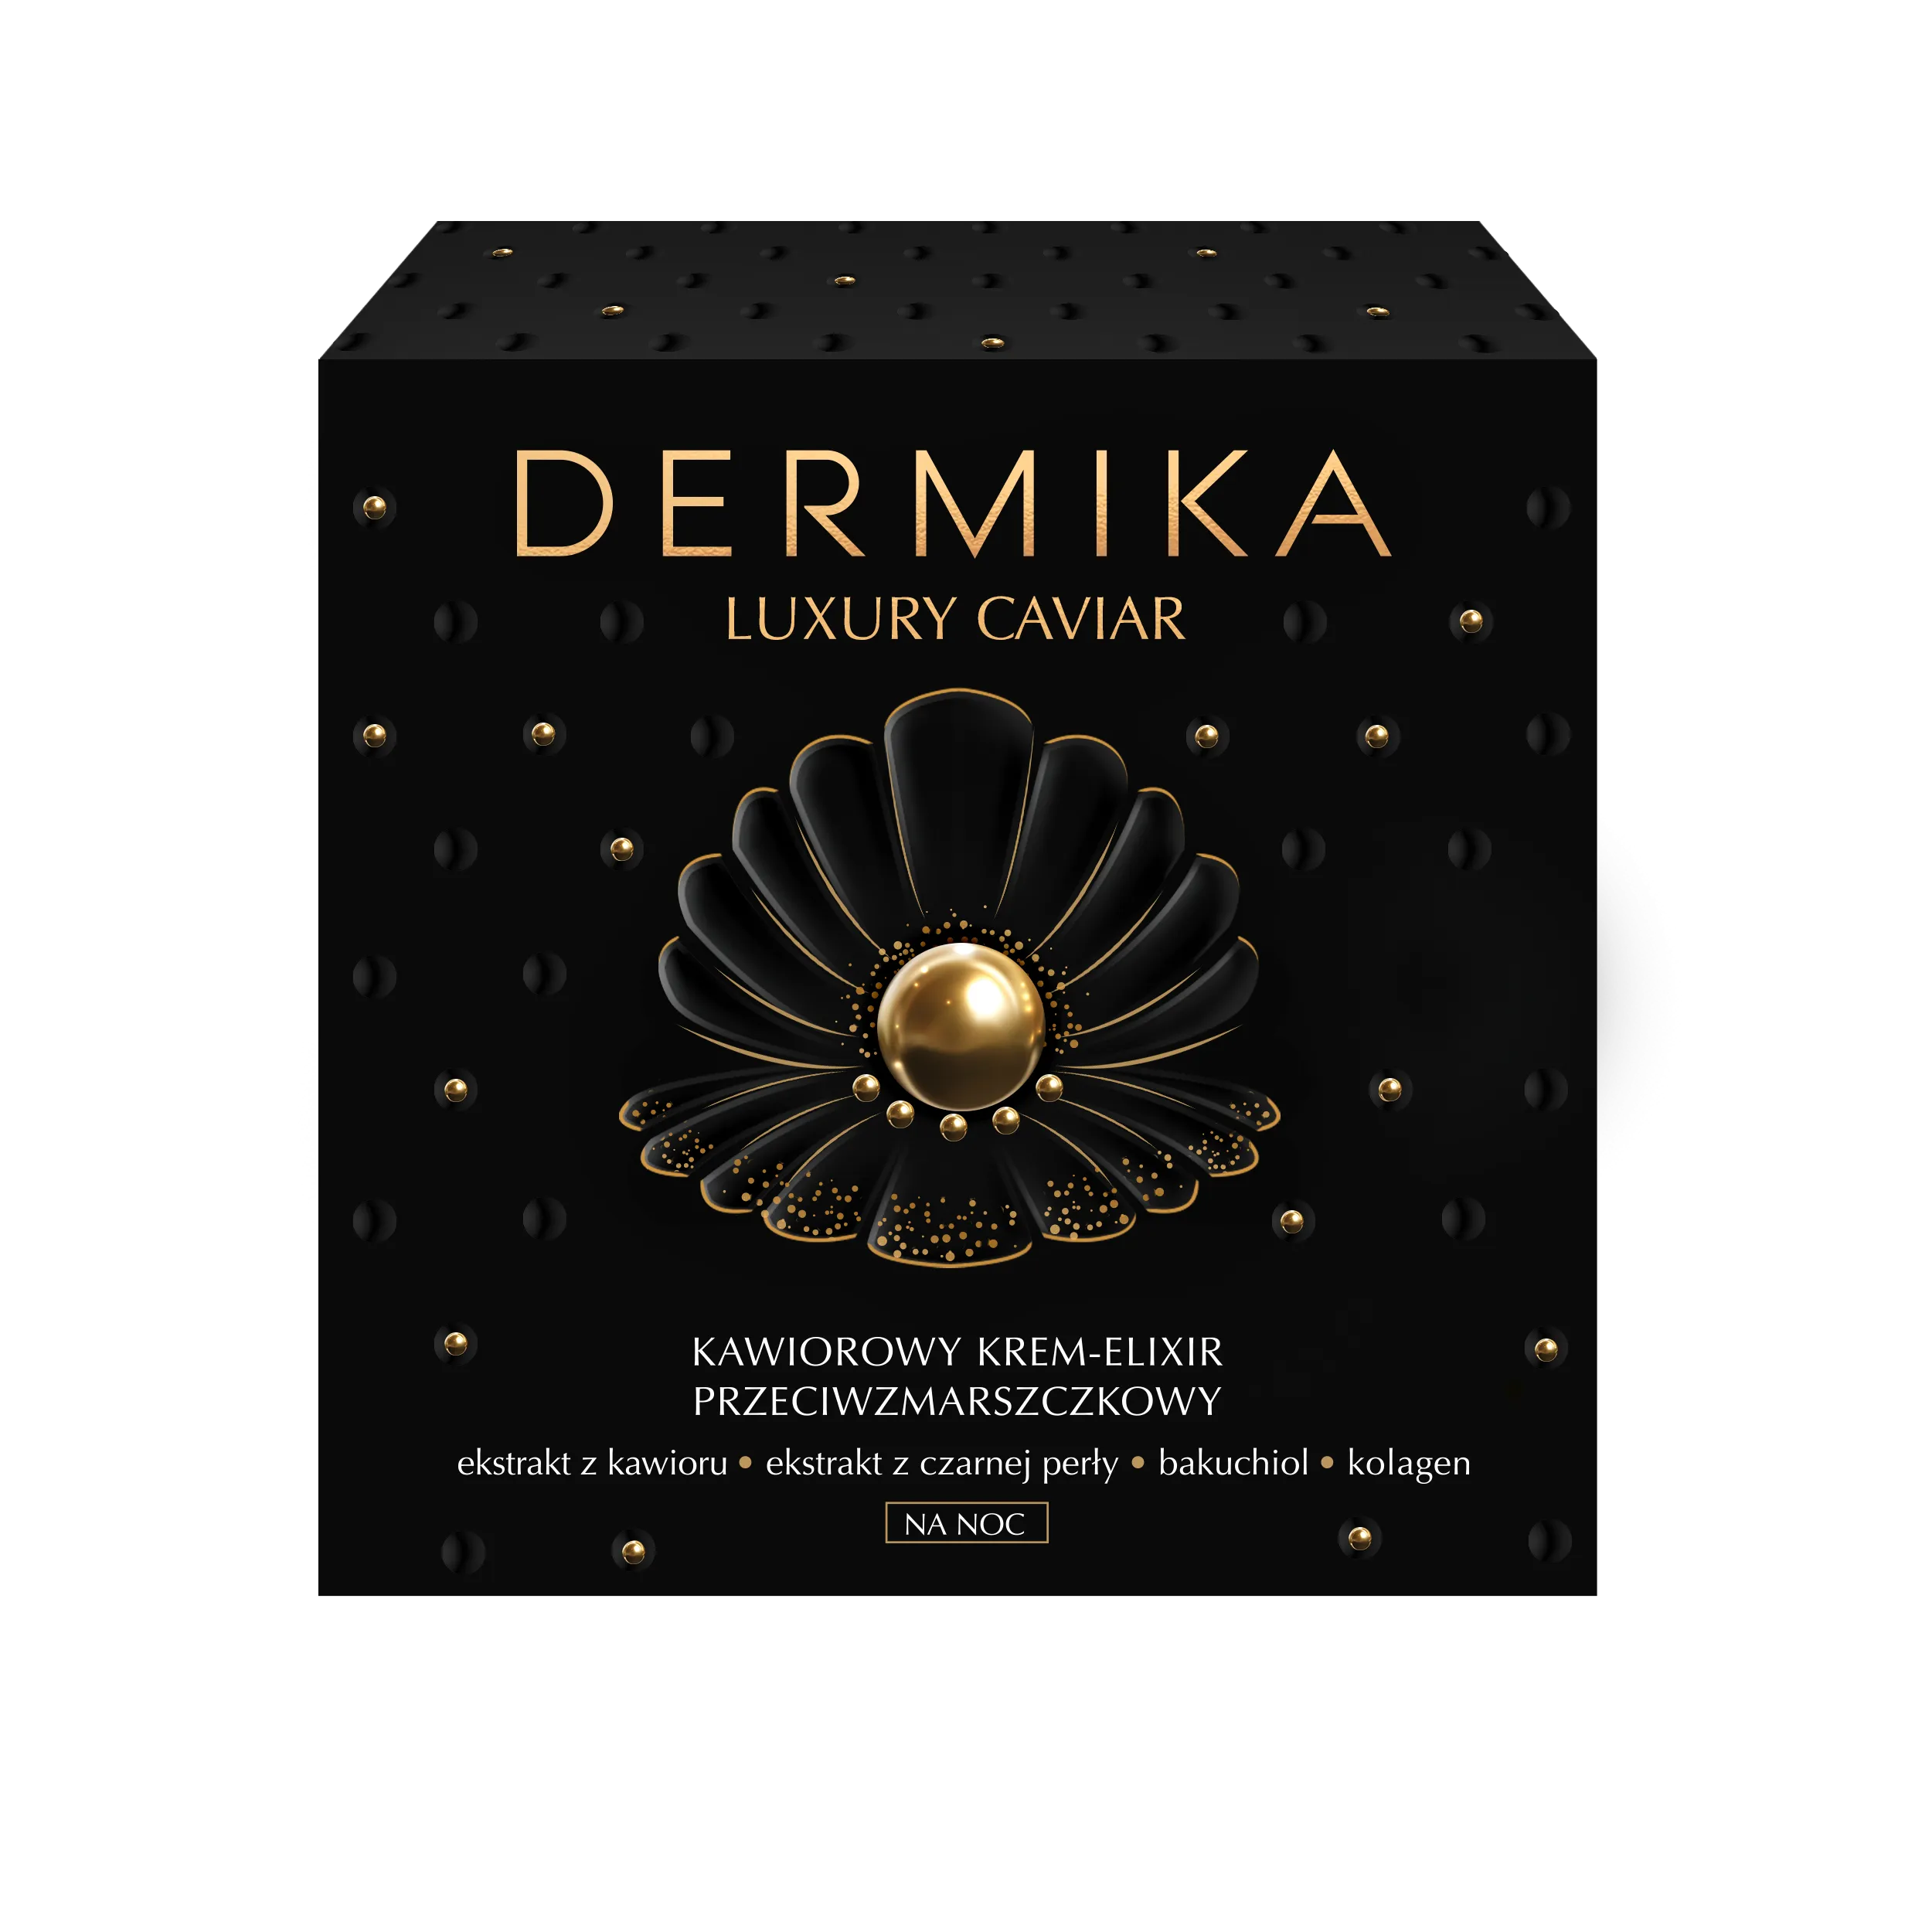 Dermika Luxury Caviar kawiorowy krem-eliksir przeciwzmarszczkowy na noc, 50 ml